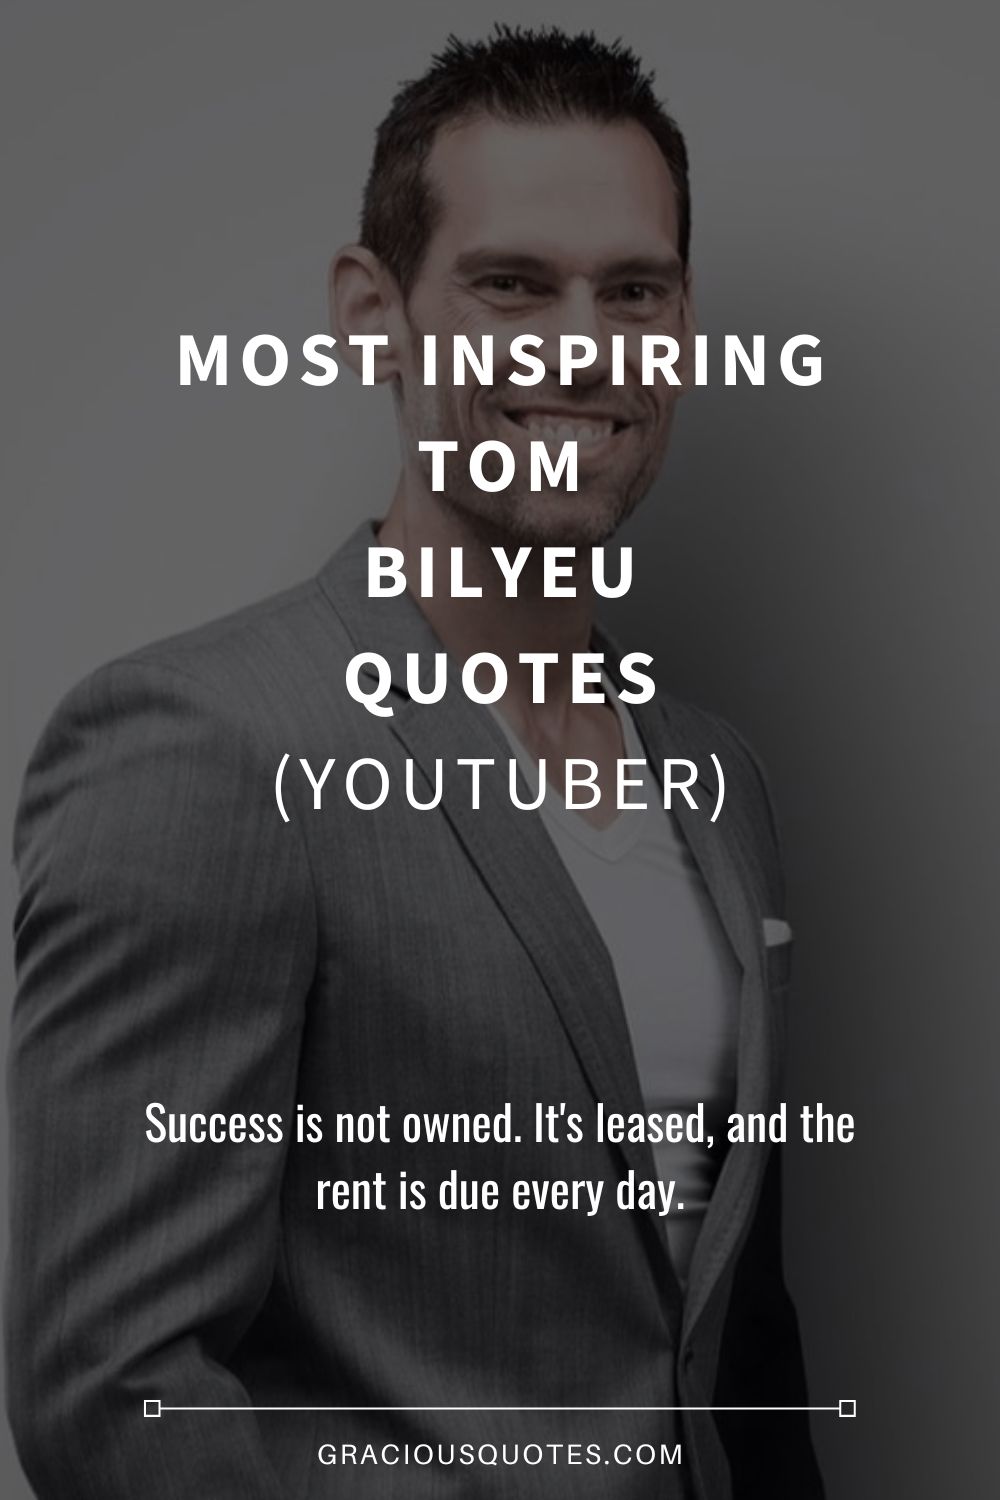 Most Inspiring Tom Bilyeu Quotes (YOUTUBER) - Gracious Quotes